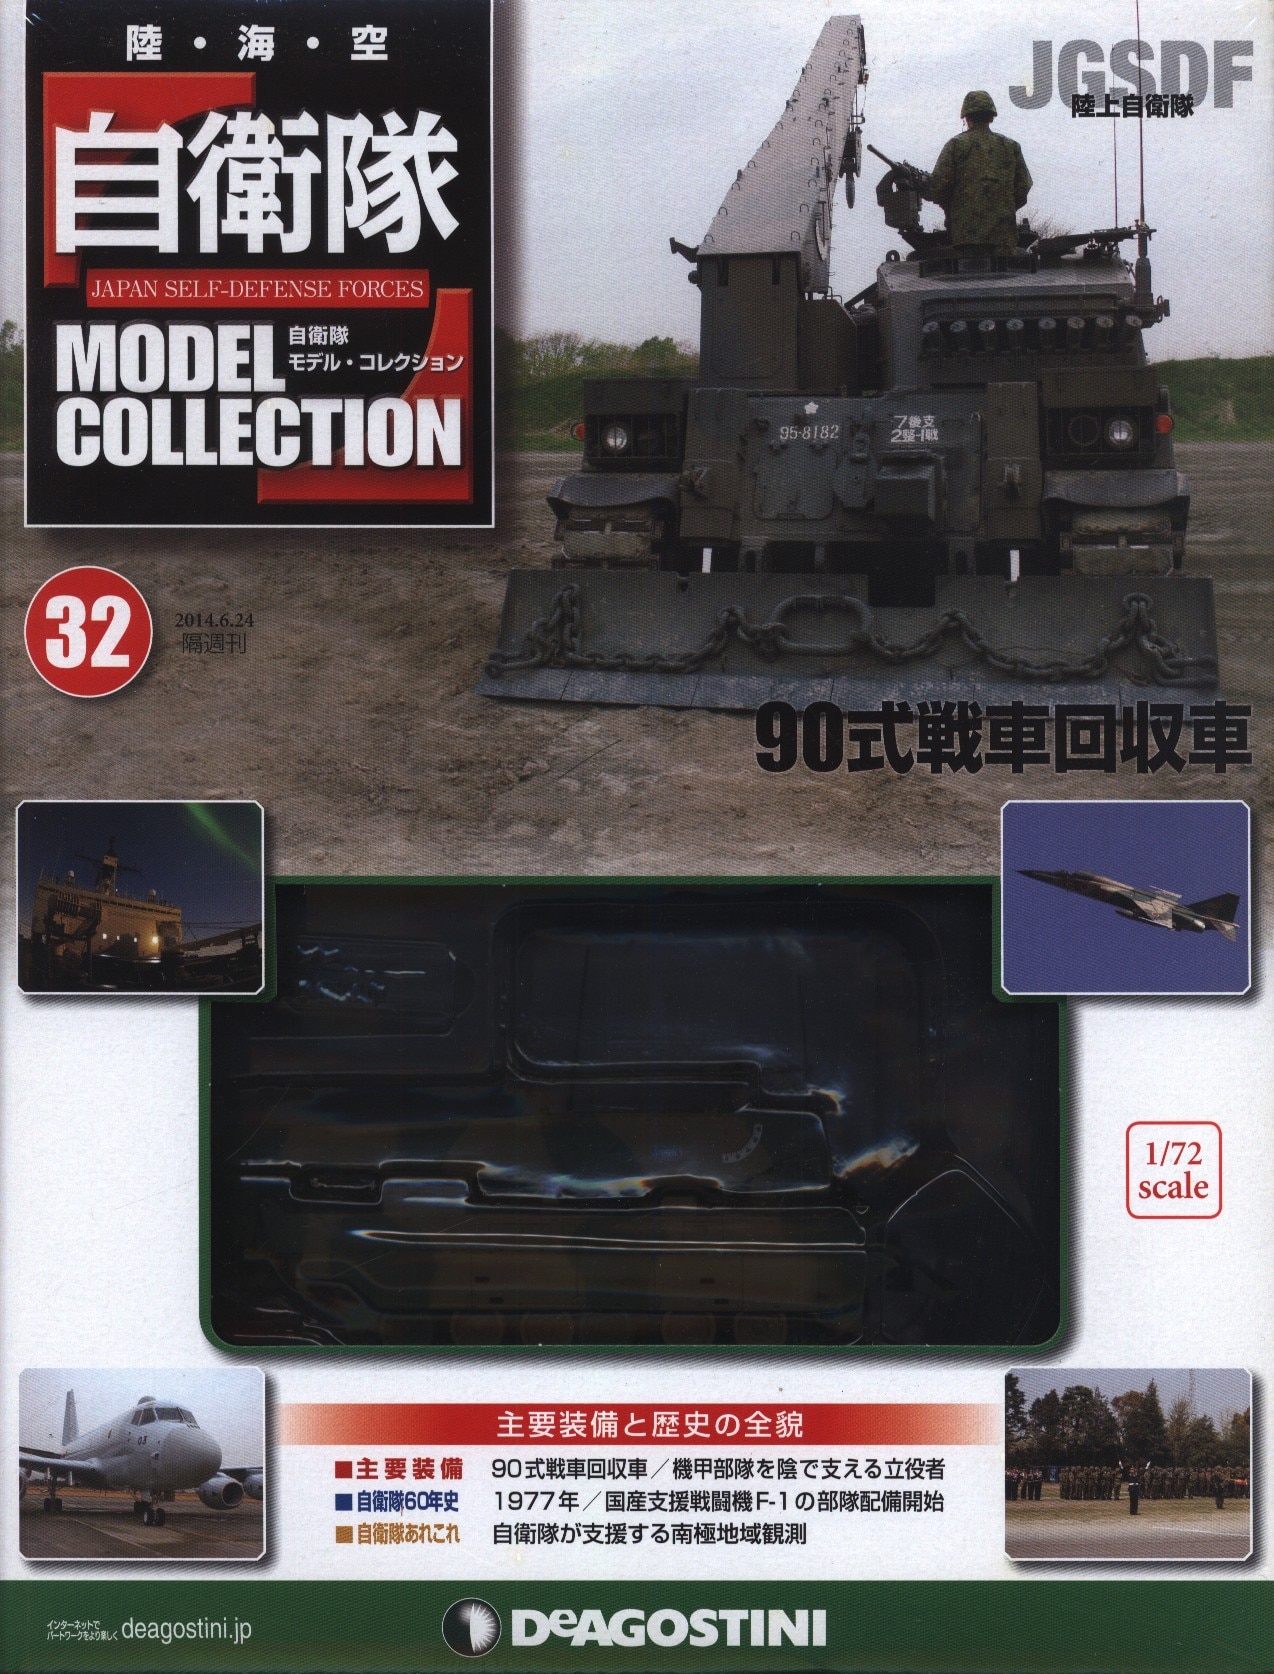 デアゴスティーニ 自衛隊モデル コレクション 陸上自衛隊 90式戦車回収車 32 まんだらけ Mandarake